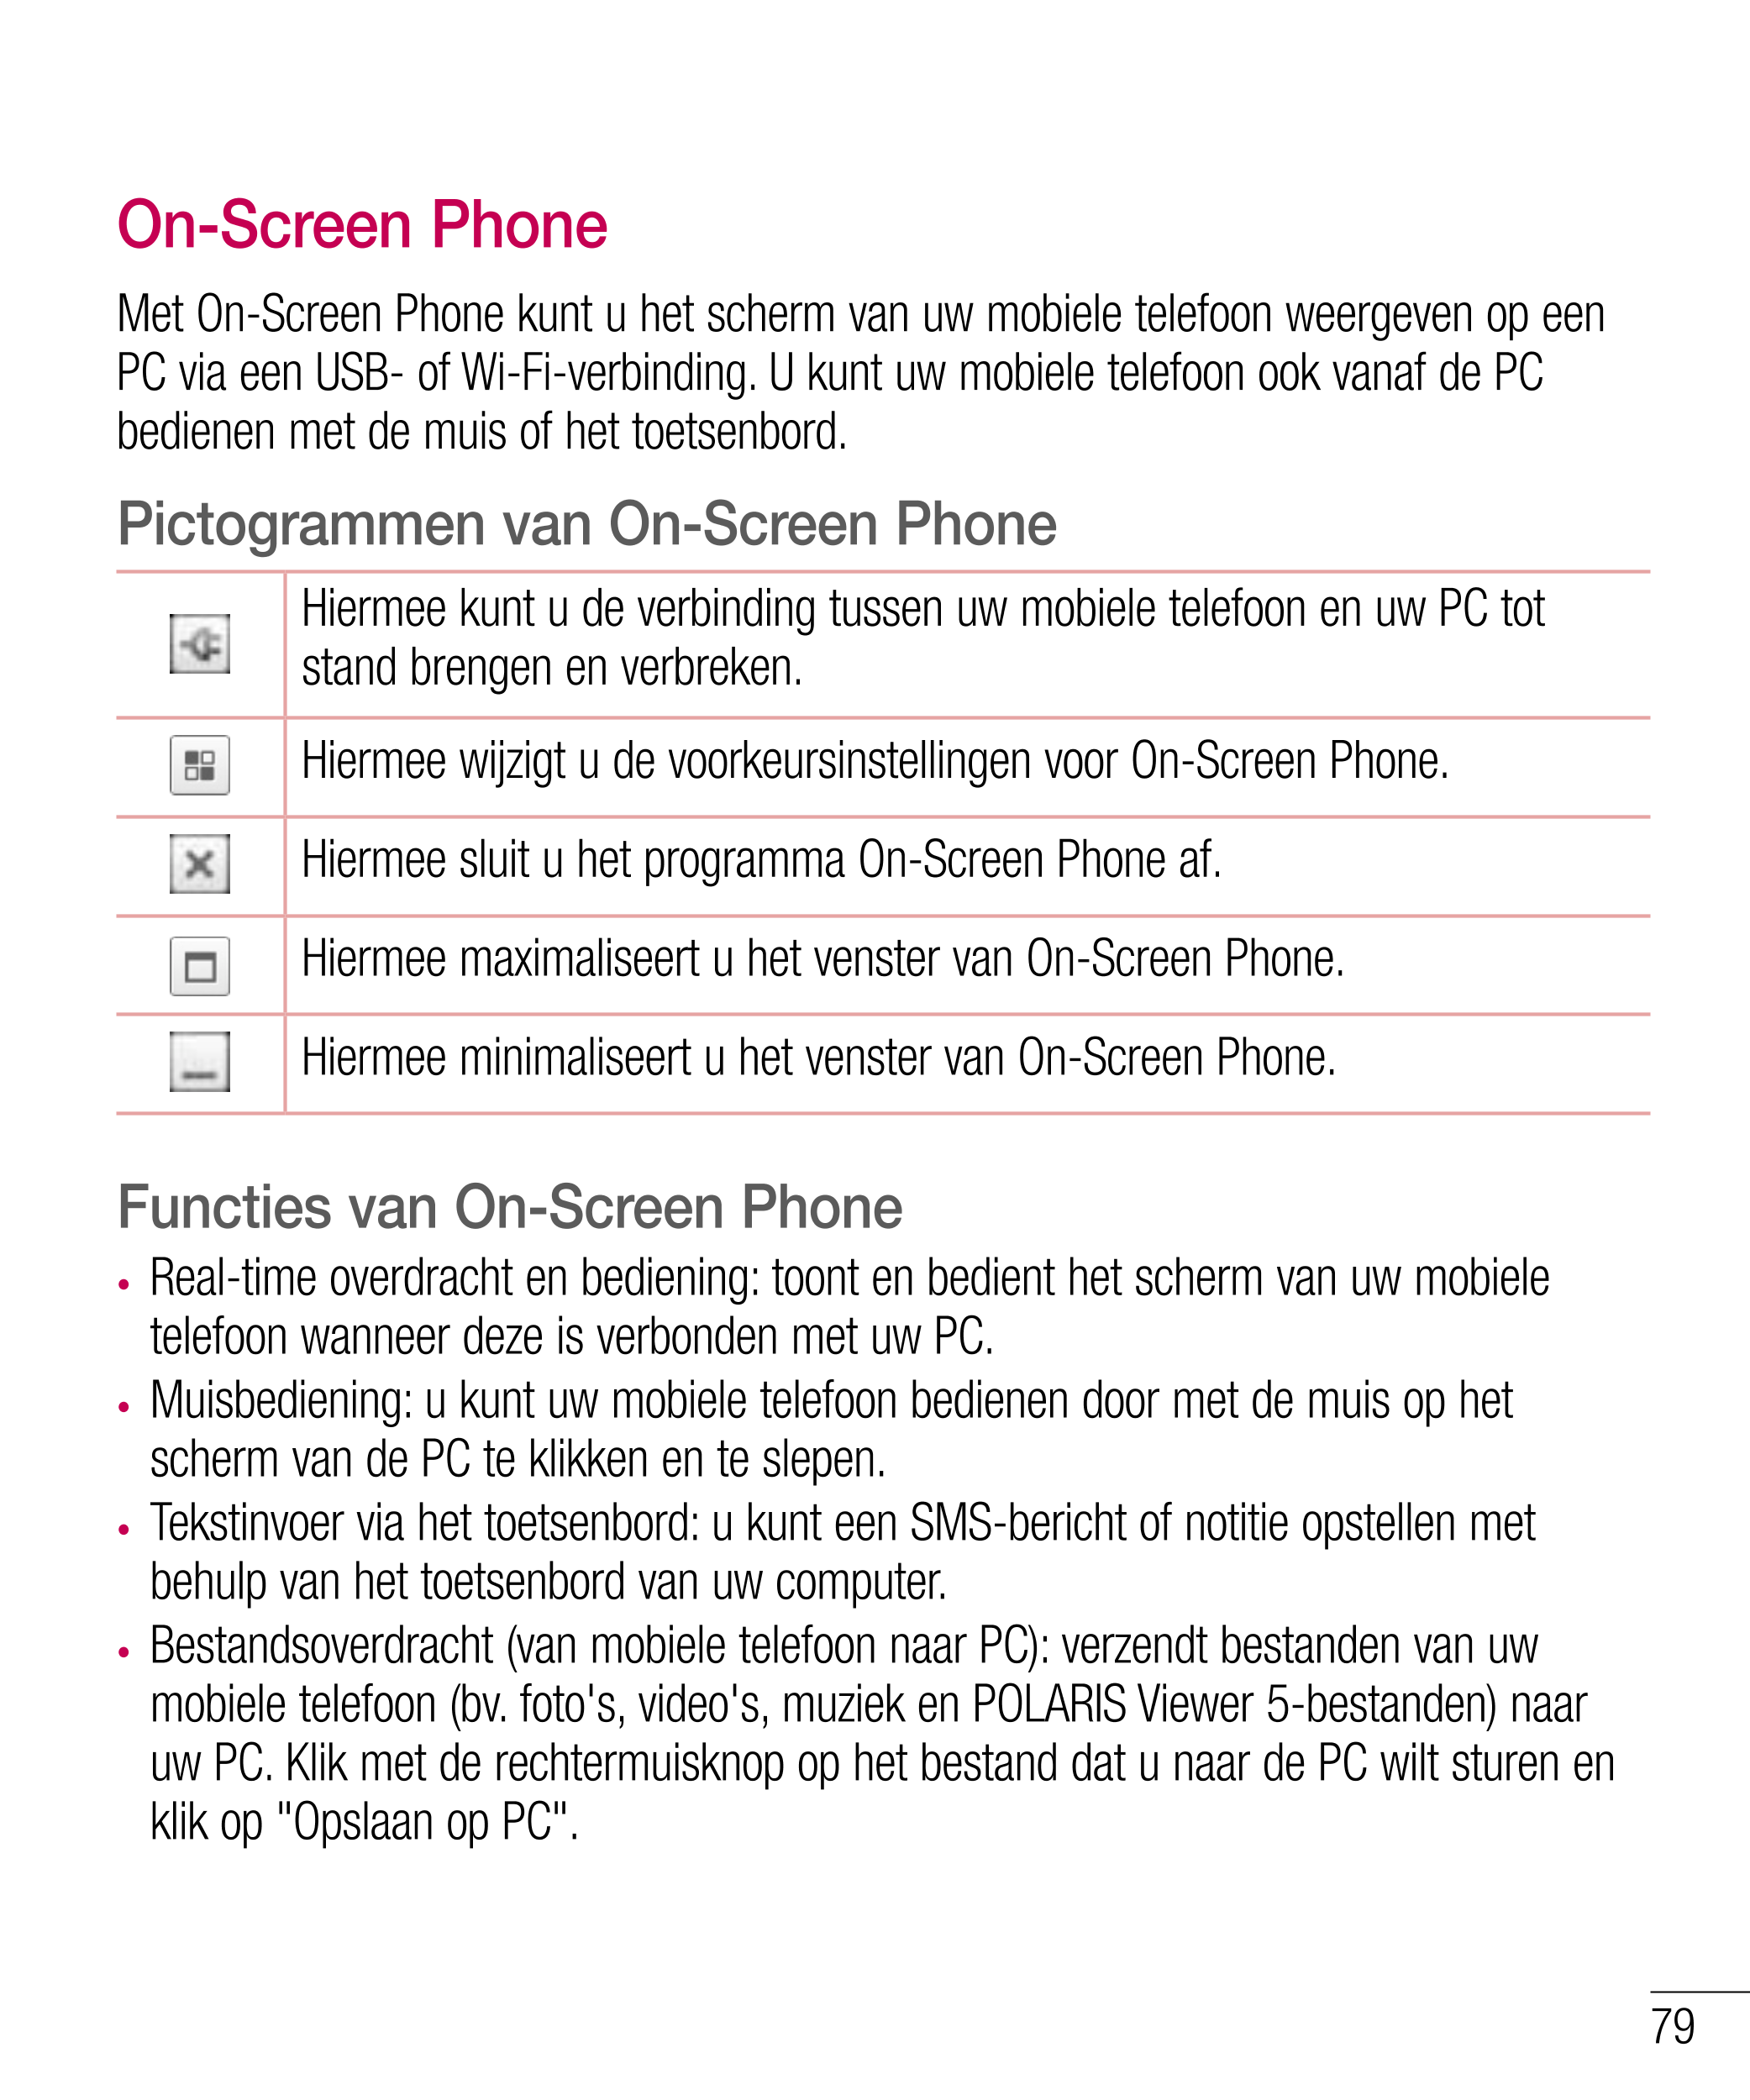 On-Screen Phone
Met On-Screen Phone kunt u het scherm van uw mobiele telefoon weergeven op een 
PC via een USB- of Wi-Fi-verbind